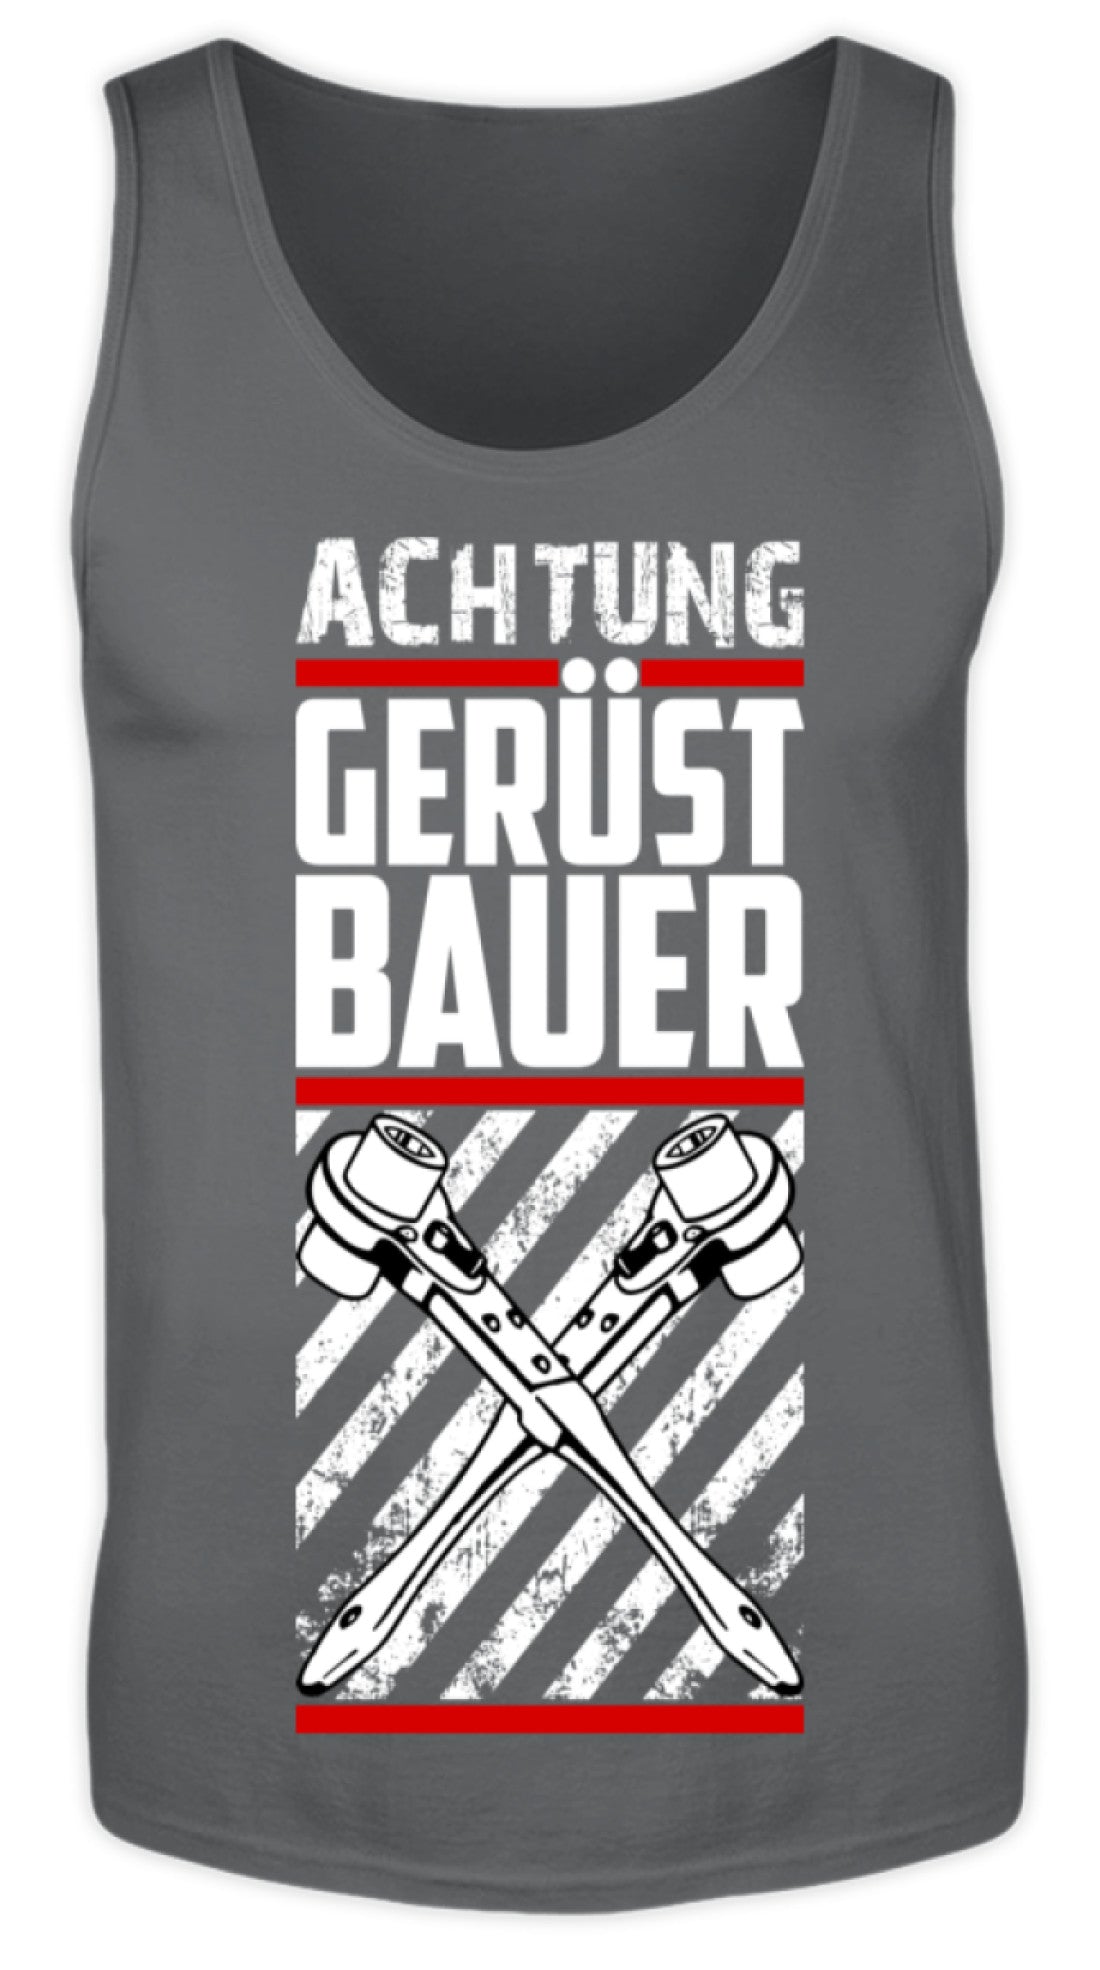 Achtung Gerüstbauer  - Herren Tanktop €19.95 Gerüstbauer - Shop >>